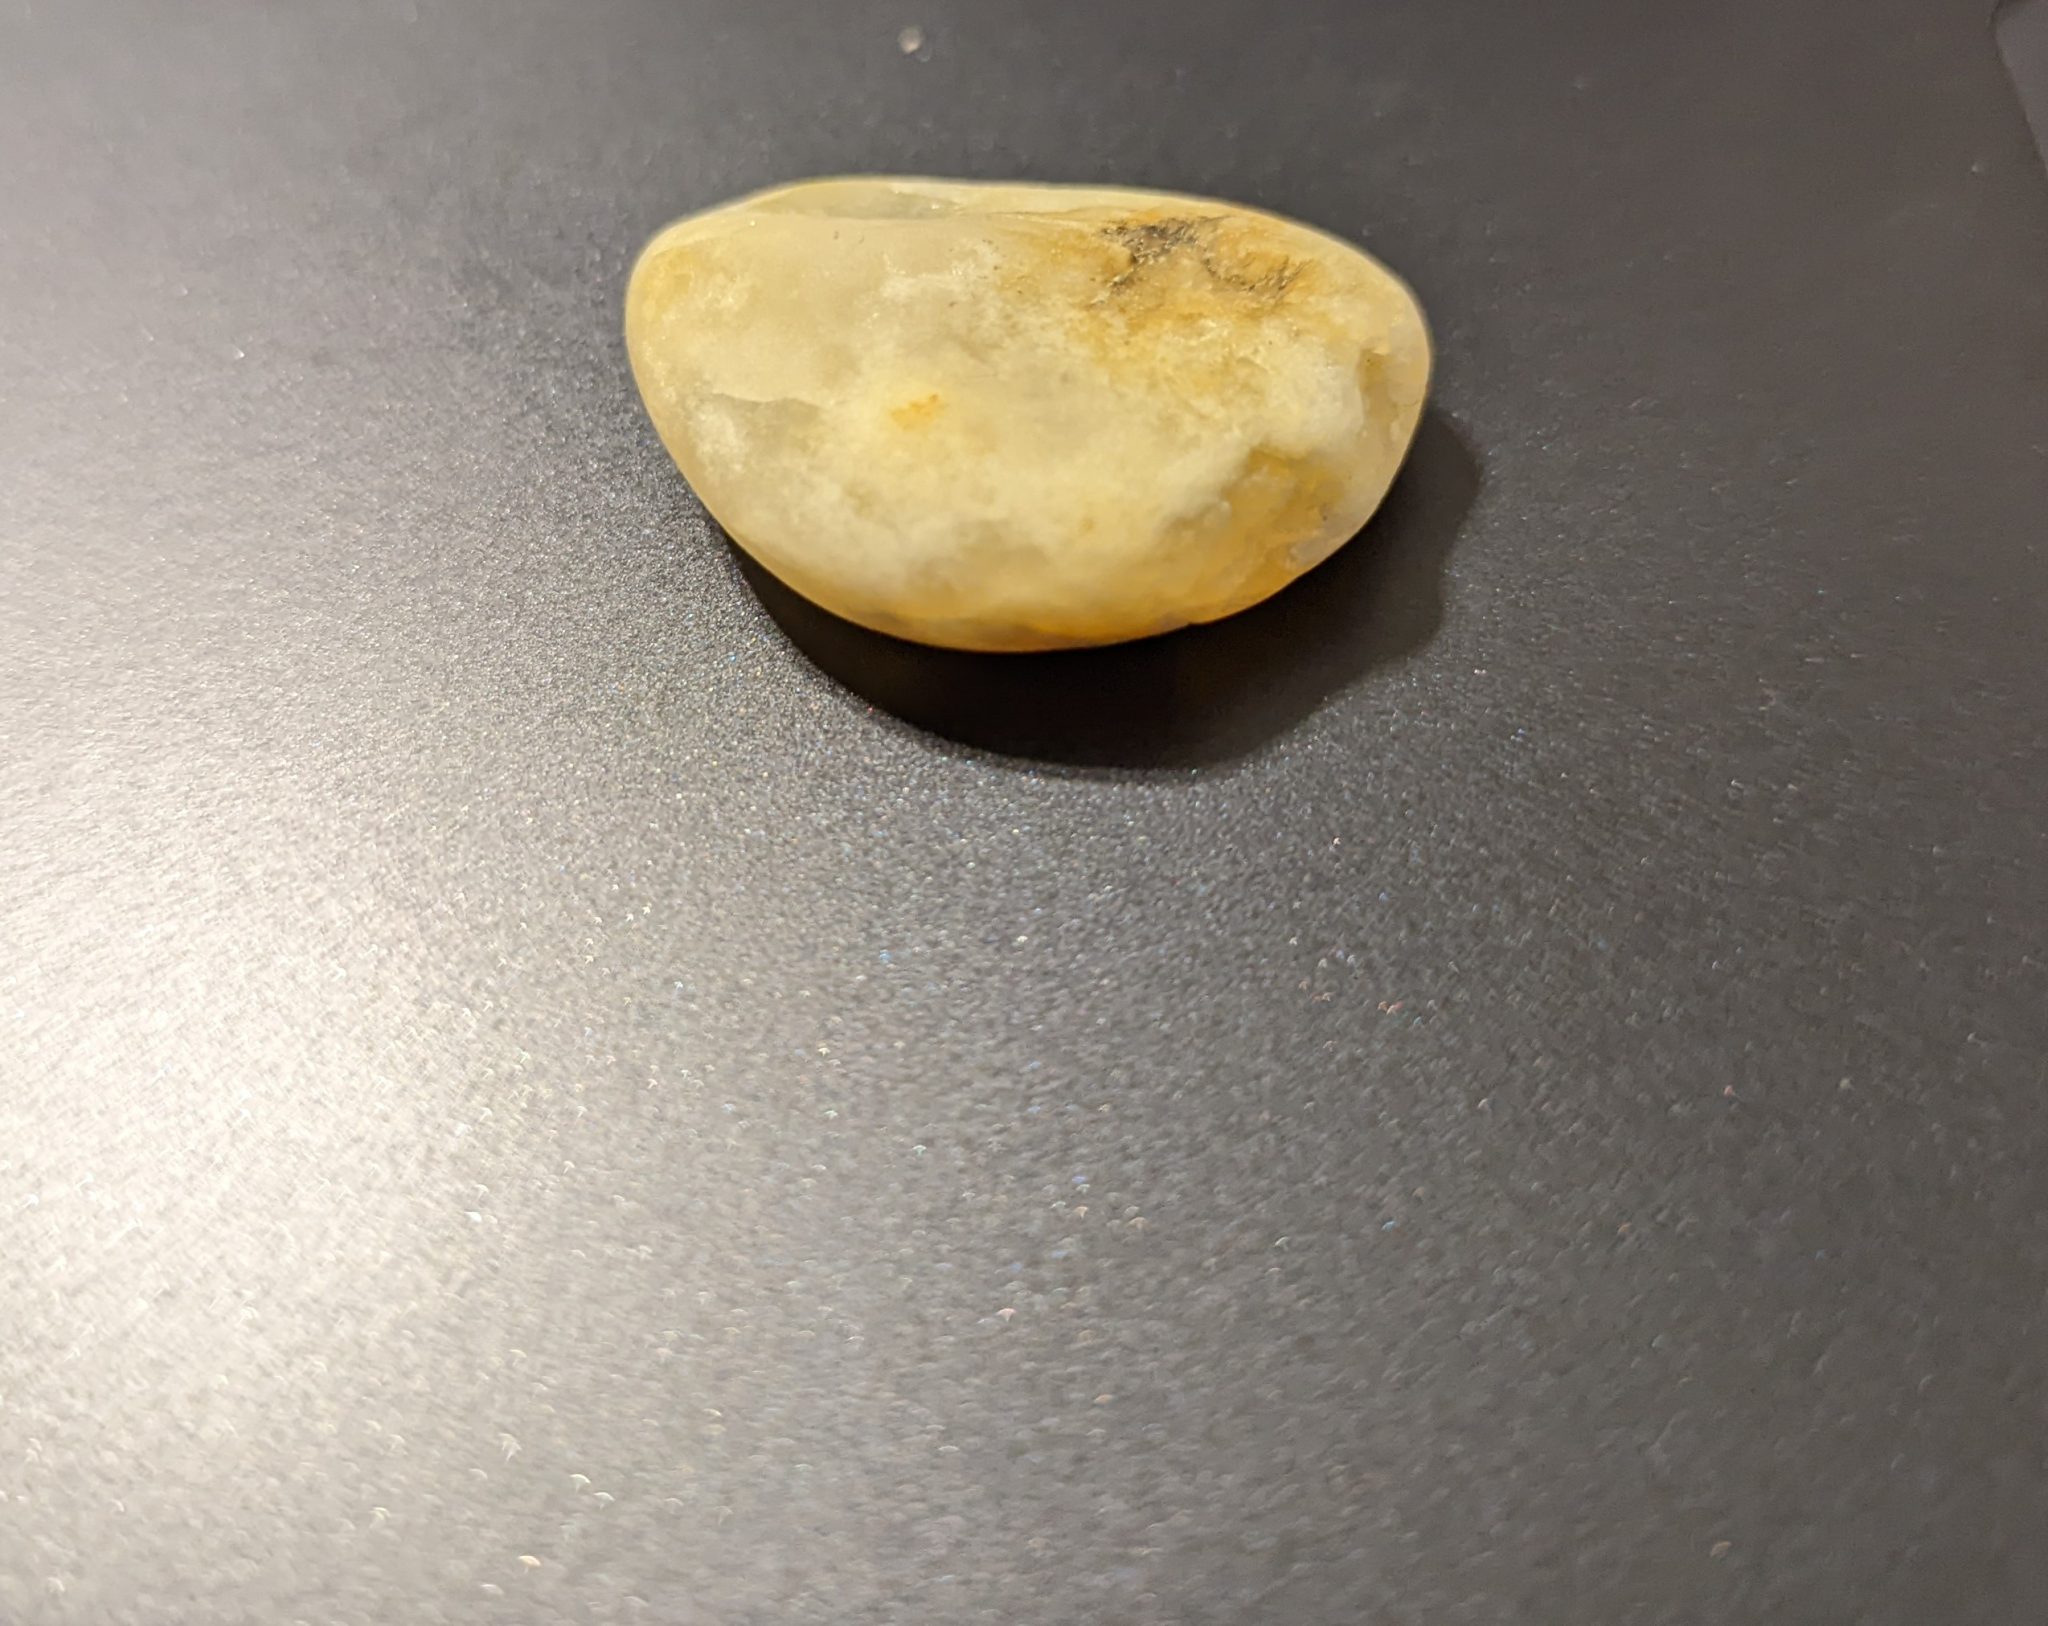 A small, beige rock.